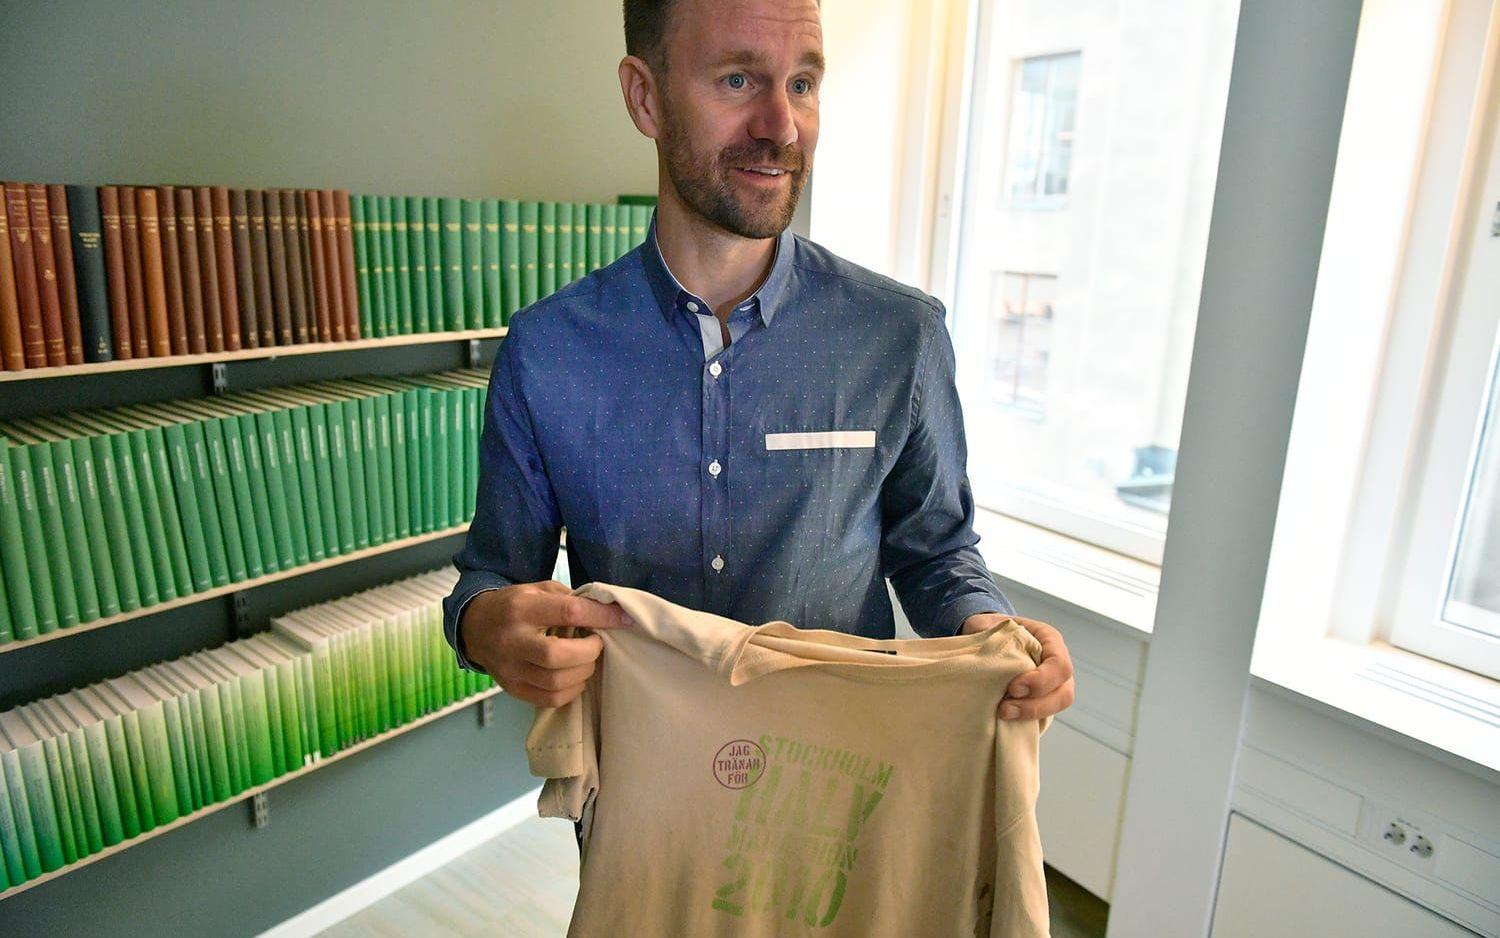 Johan Gustafsson som satt tillfångatagen i Mali i nästan sex år visar upp tröjan han hade på sig när han blev kidnappad. Nu berättar han för första gången om tiden som kidnappad. FOTO: Vilhelm Stockstad/TT
